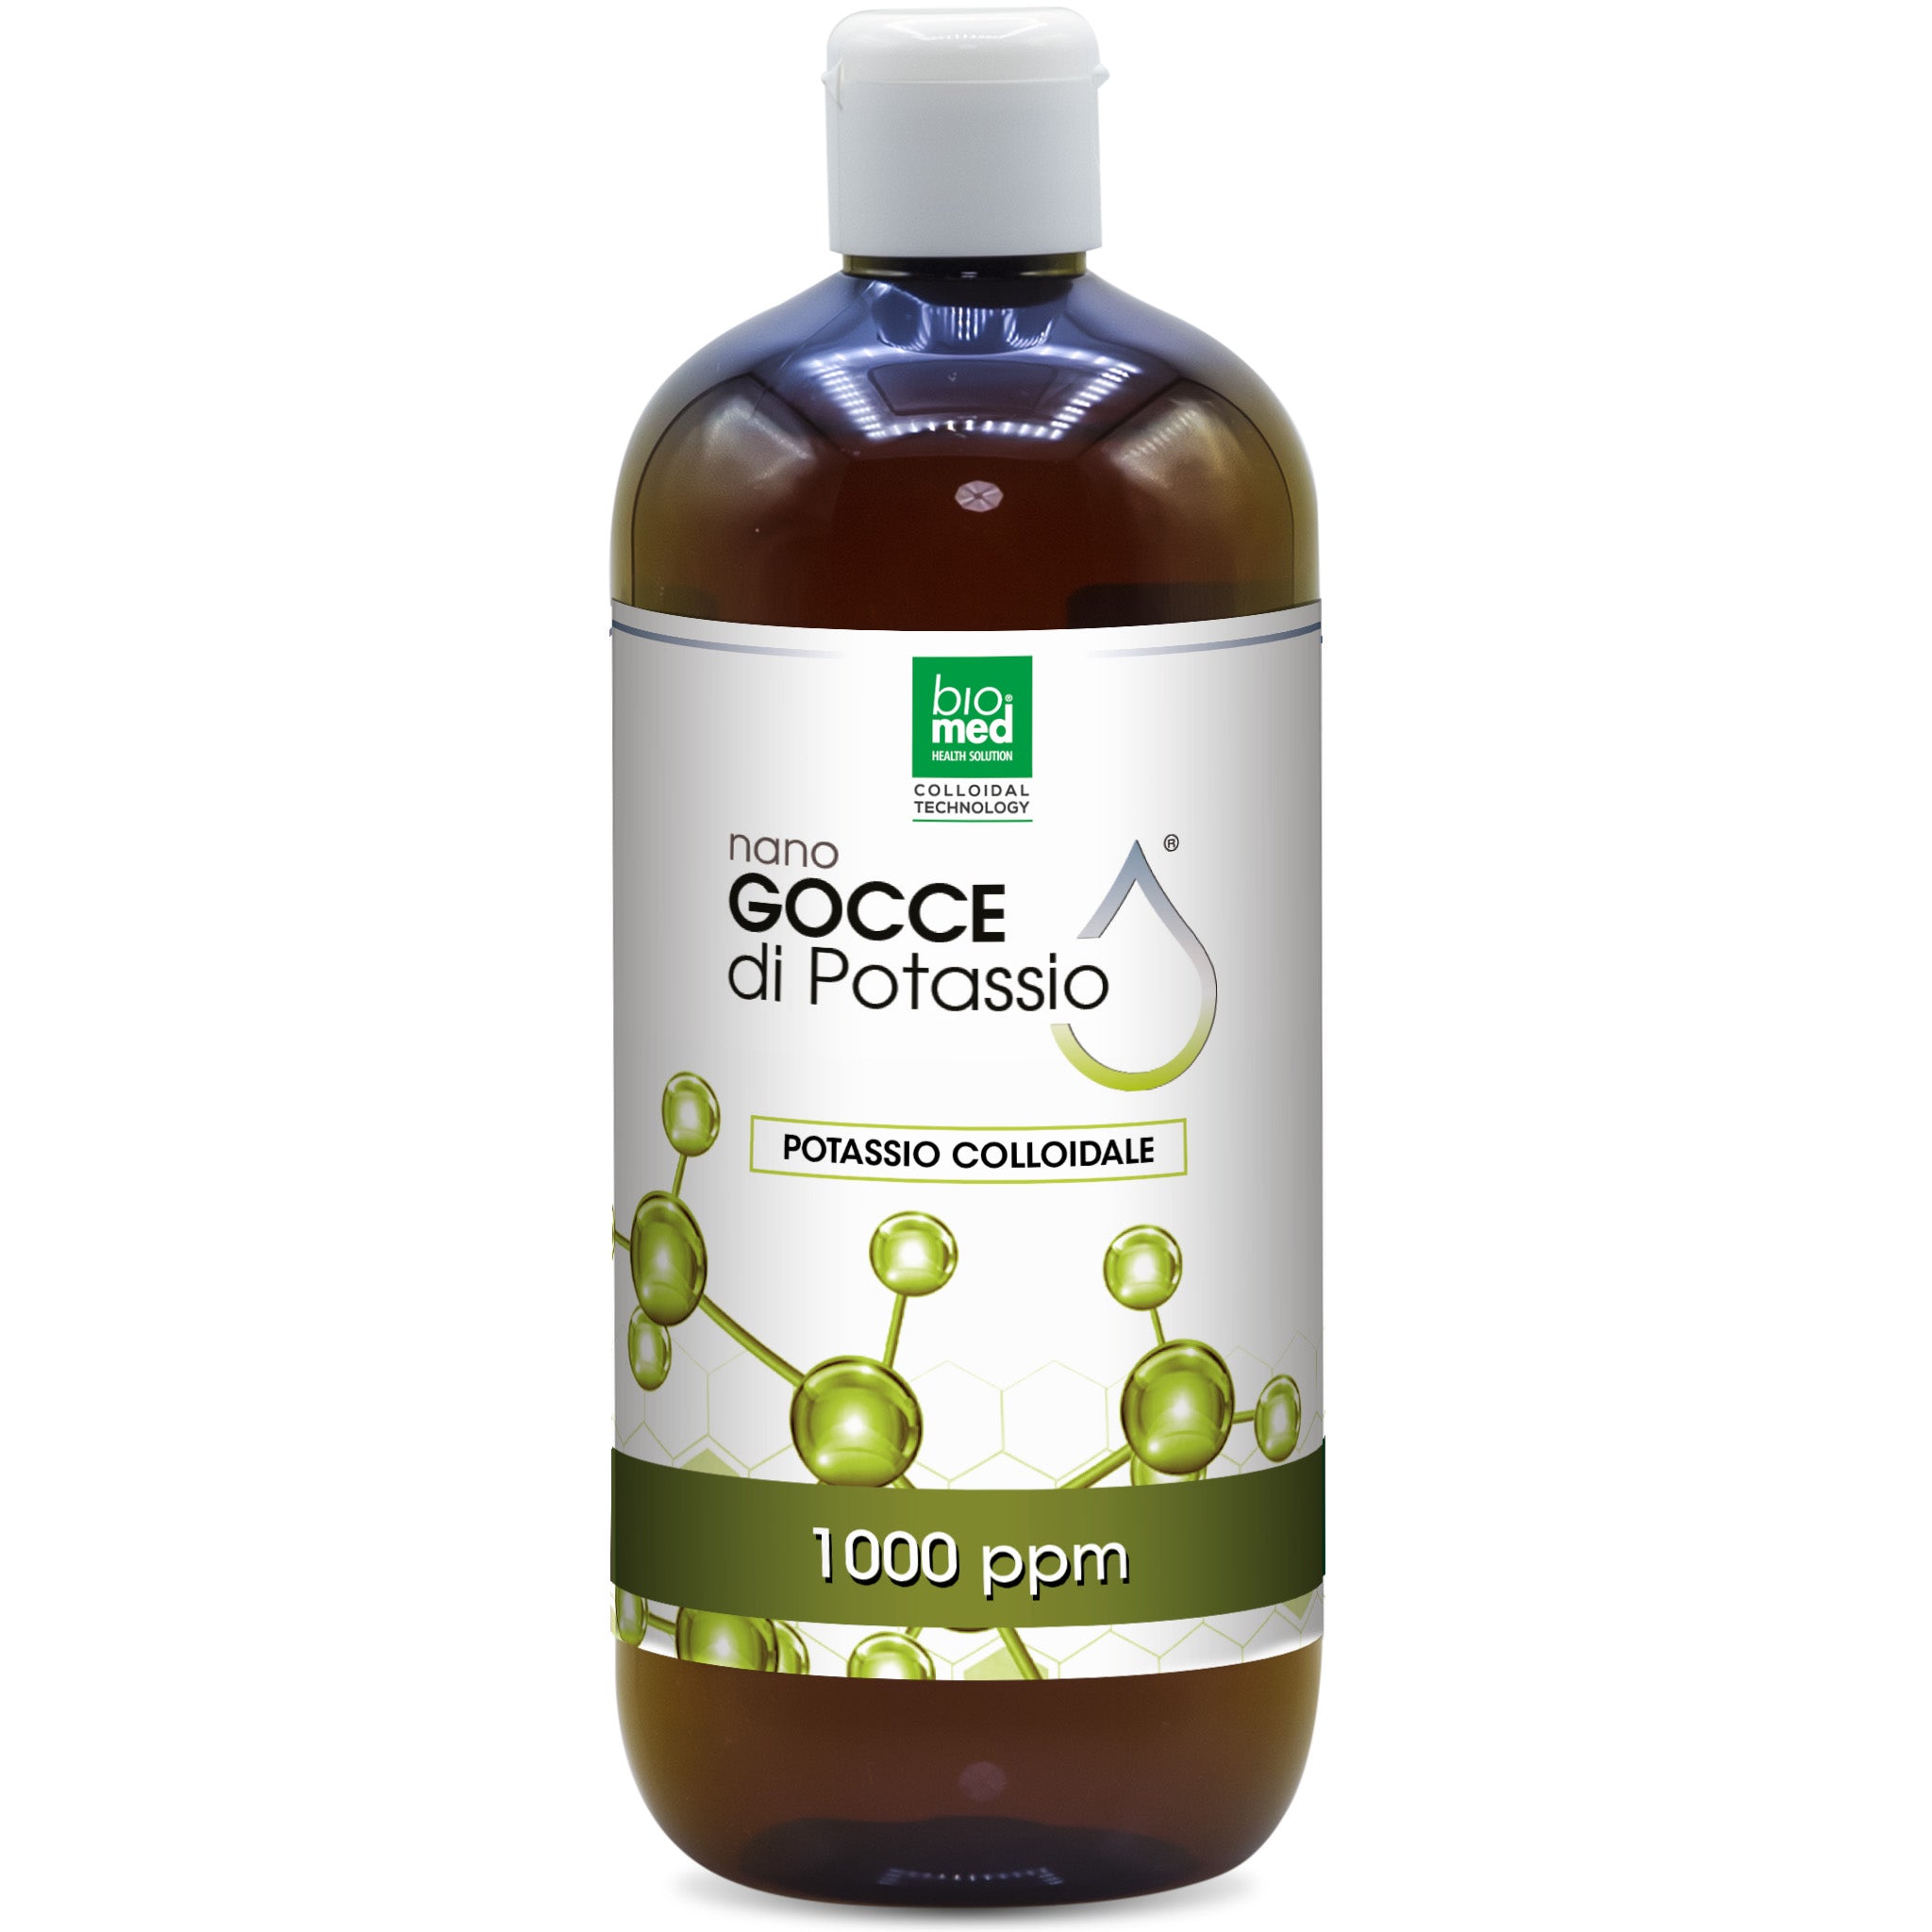 Potassio colloidale Attivo biomed - Nano Gocce - 500ml - 1000ppm